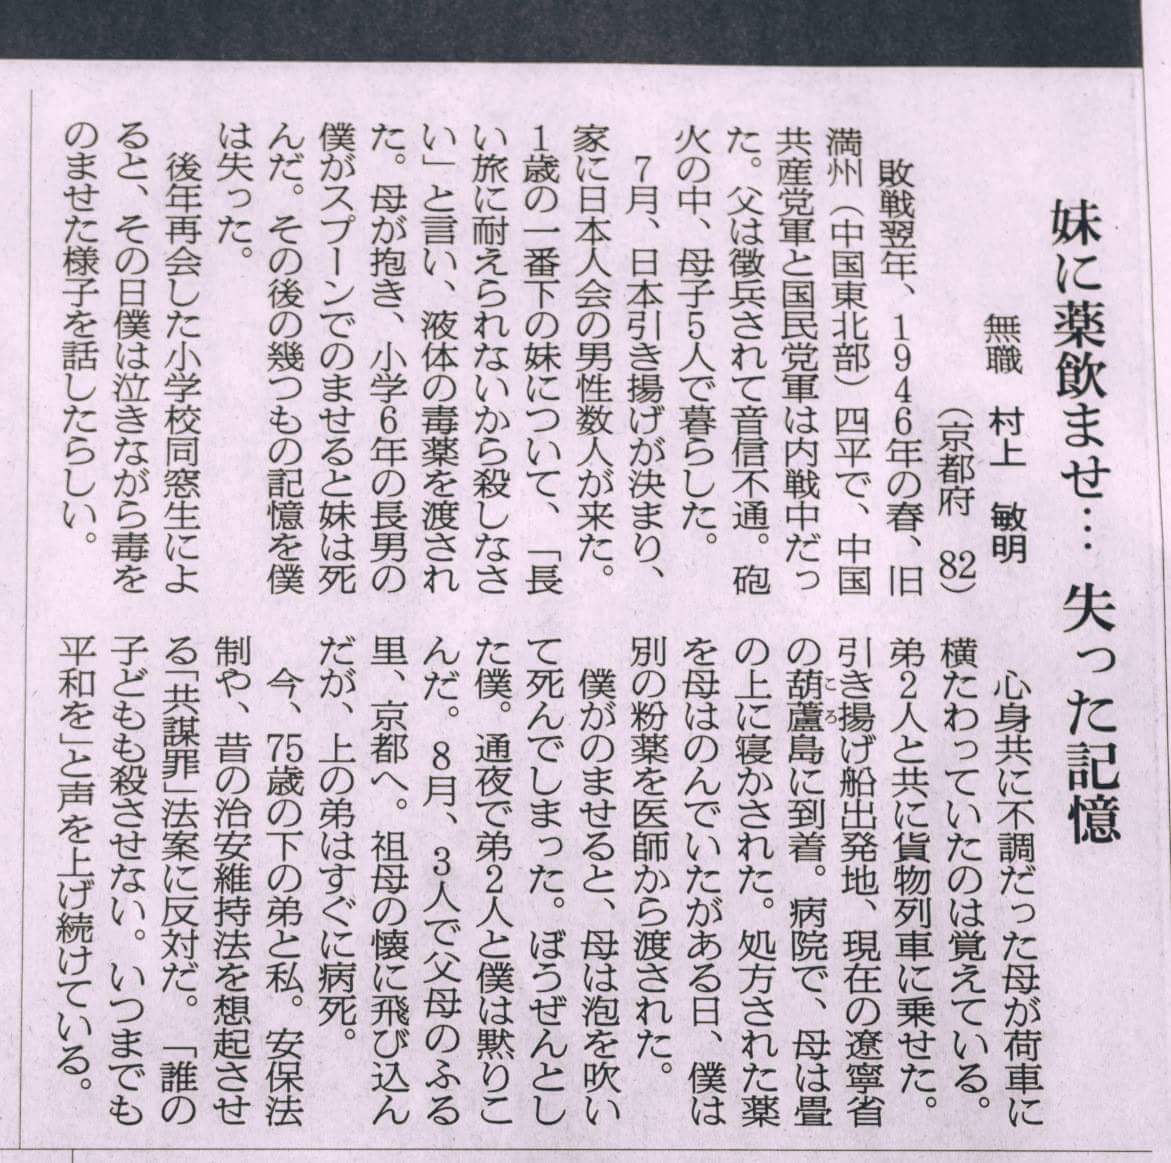 朝日新聞の戦争体験者のエッセイが東京版と大阪版で異なっていると話題に！「共謀罪反対」の最後の5行が東京版では削除！